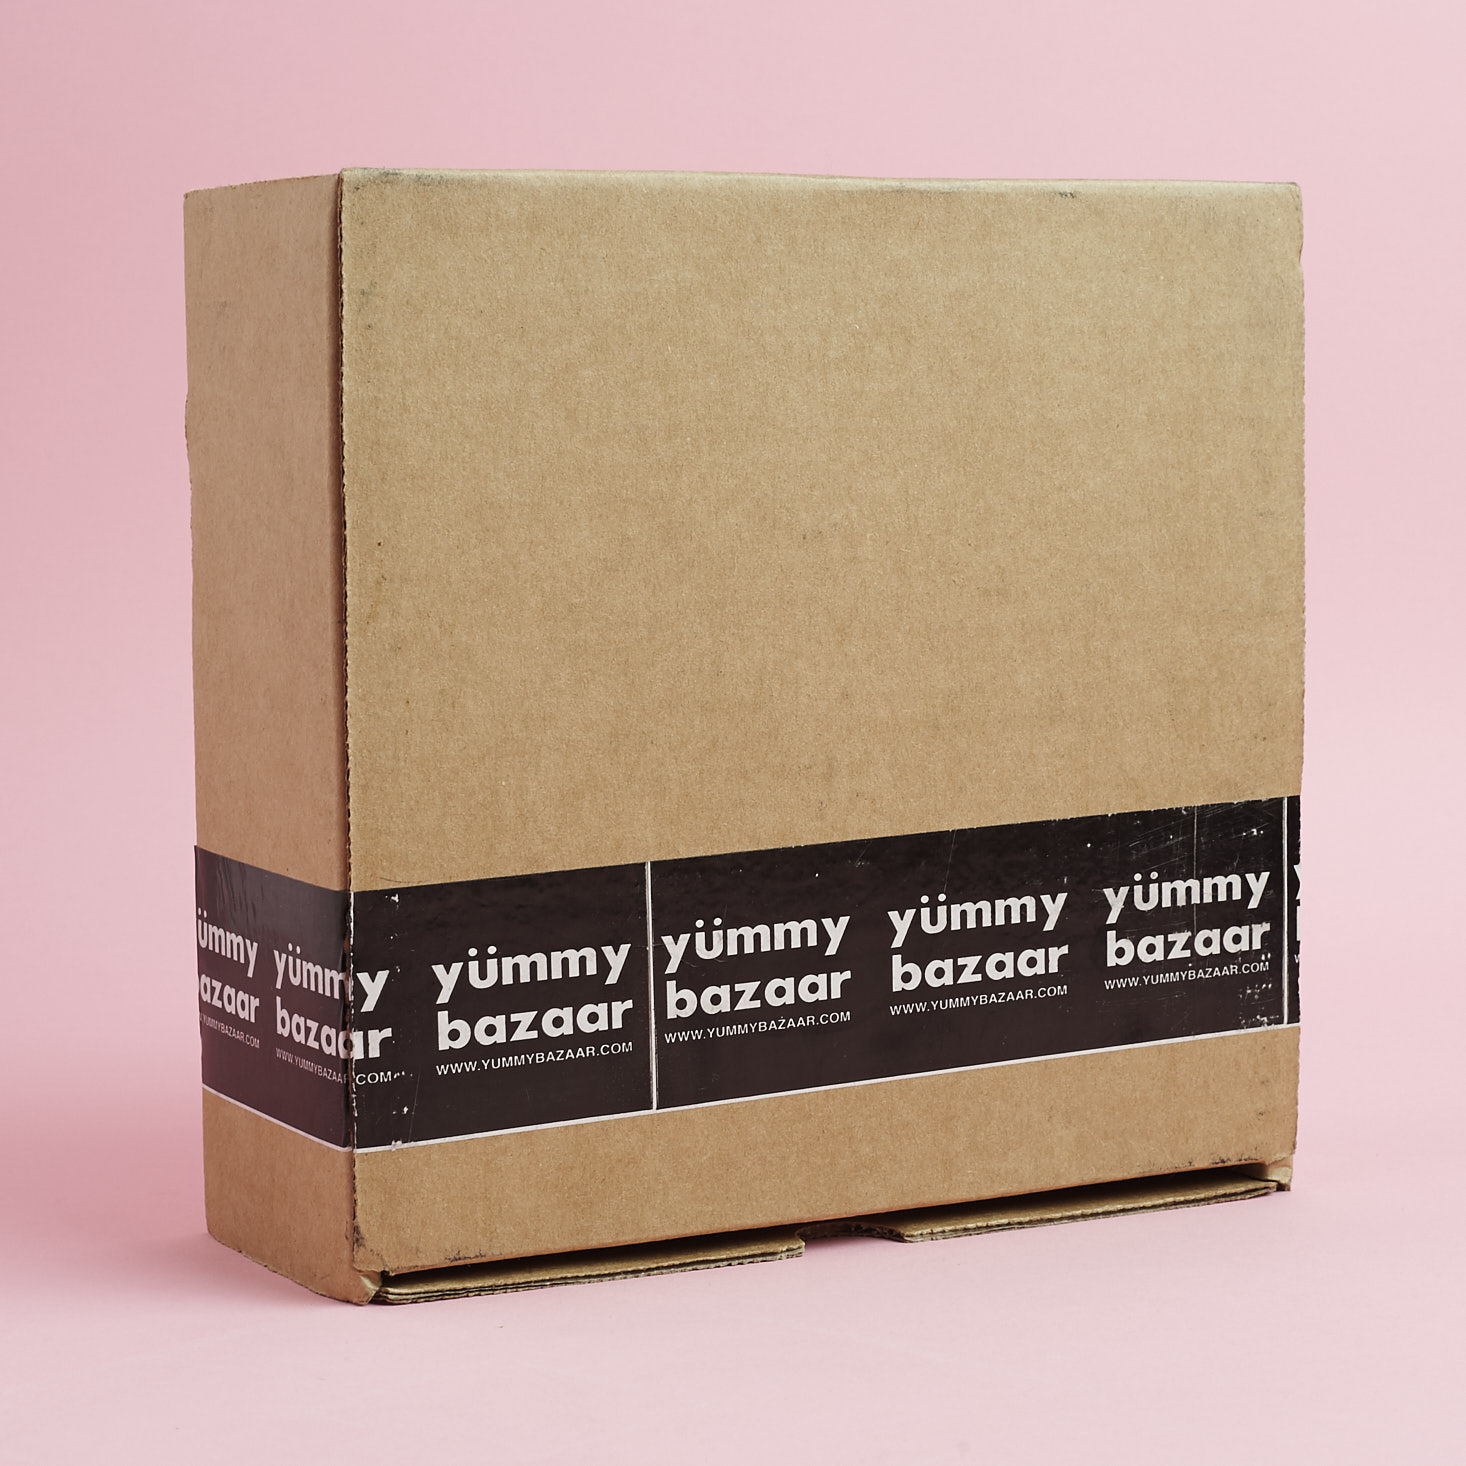 Yummy Bazaar World Sampler Box Review – September 2017